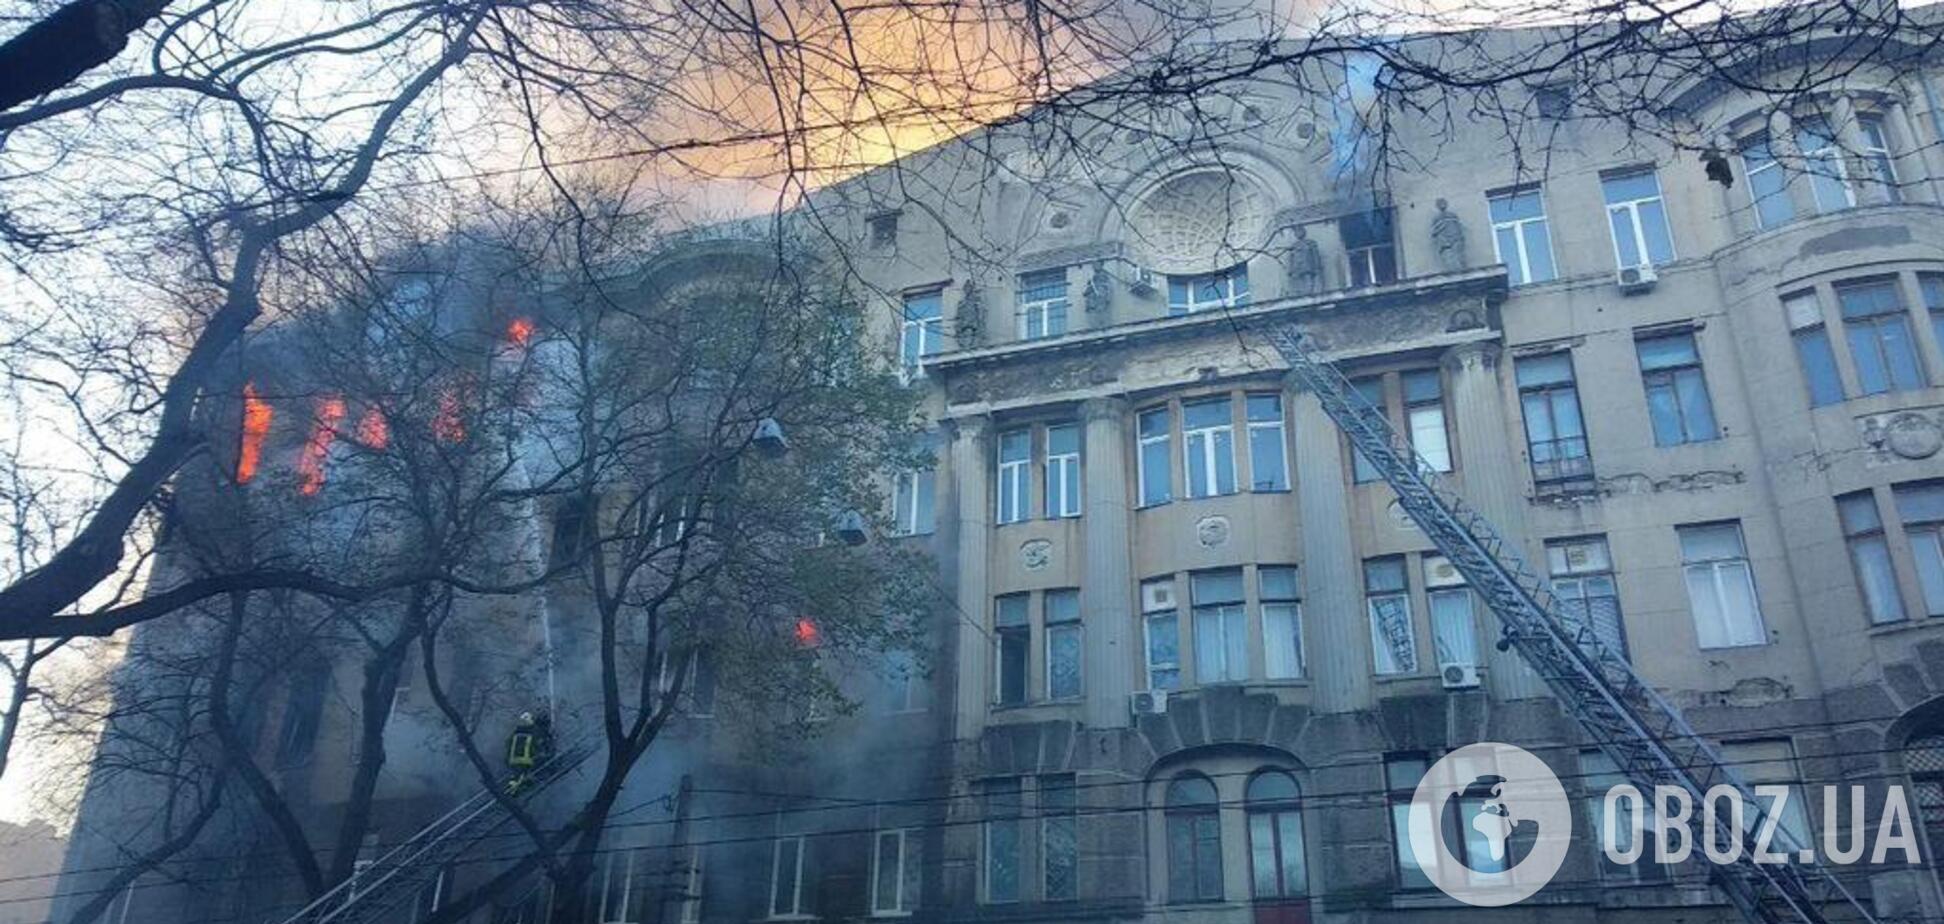 'Господи, спаси всех!' Выжившая студентка рассказала страшные подробности о пожаре в Одессе